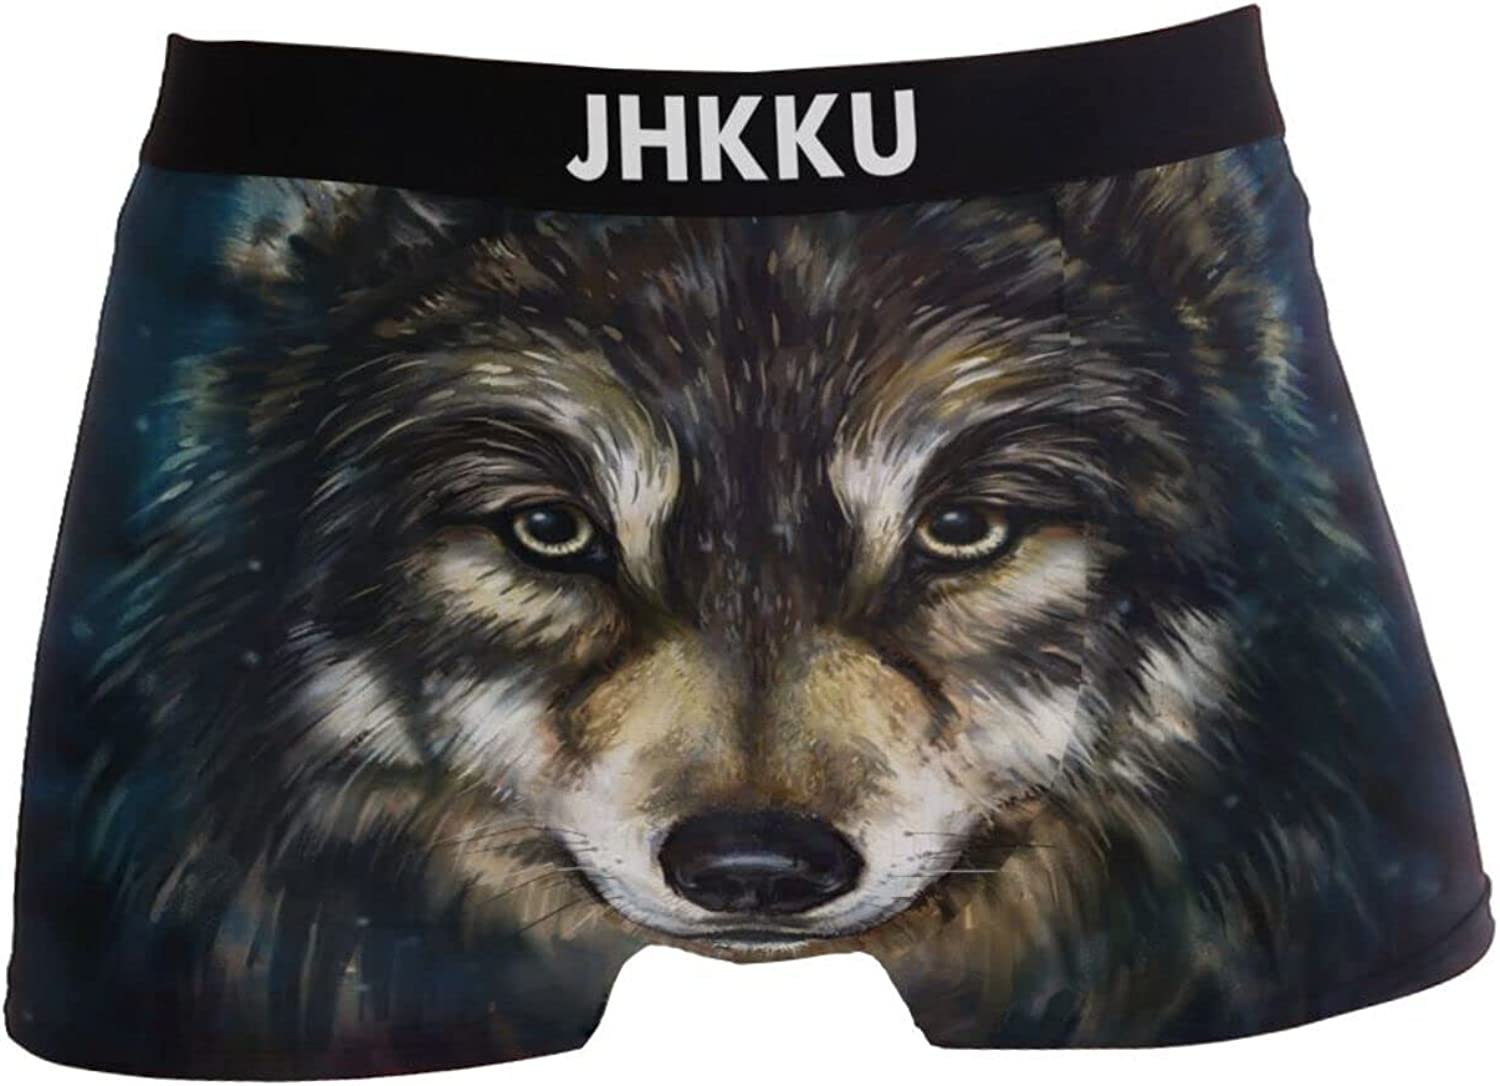 JHKKU Men's Underwear Fashion Stretch Soft Boxer Briefs Comfort